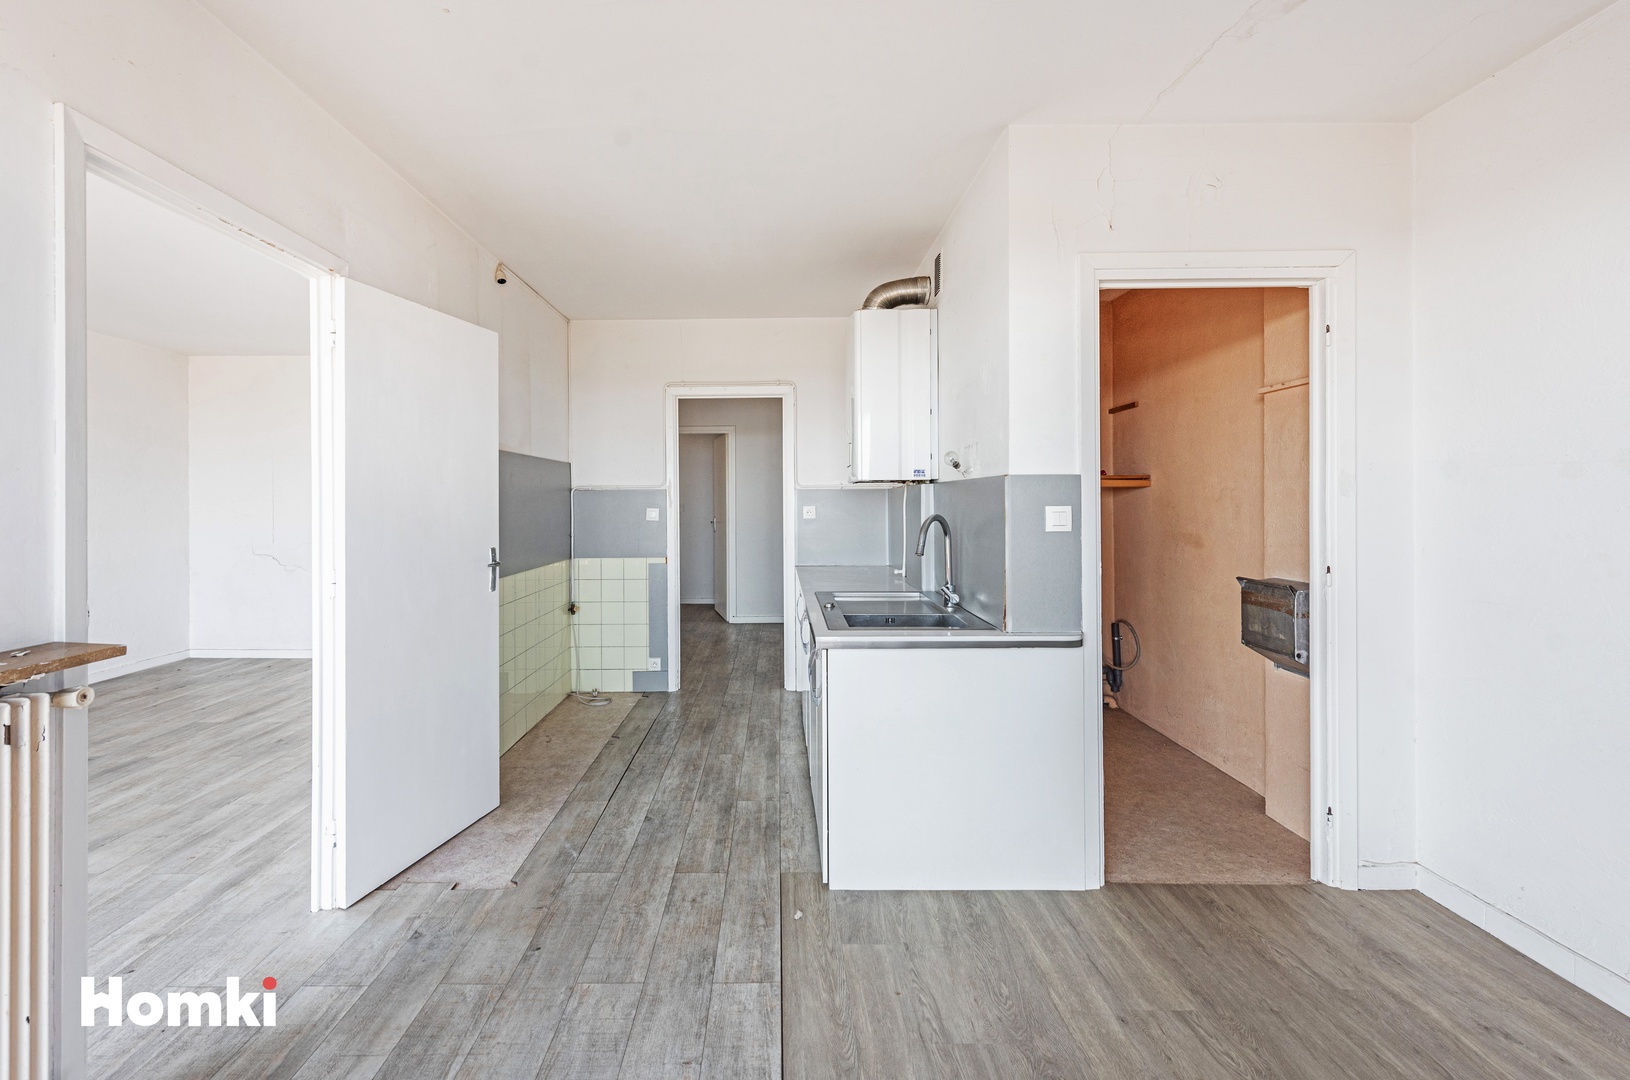 Homki - Vente Appartement  de 65.0 m² à Antibes 06600